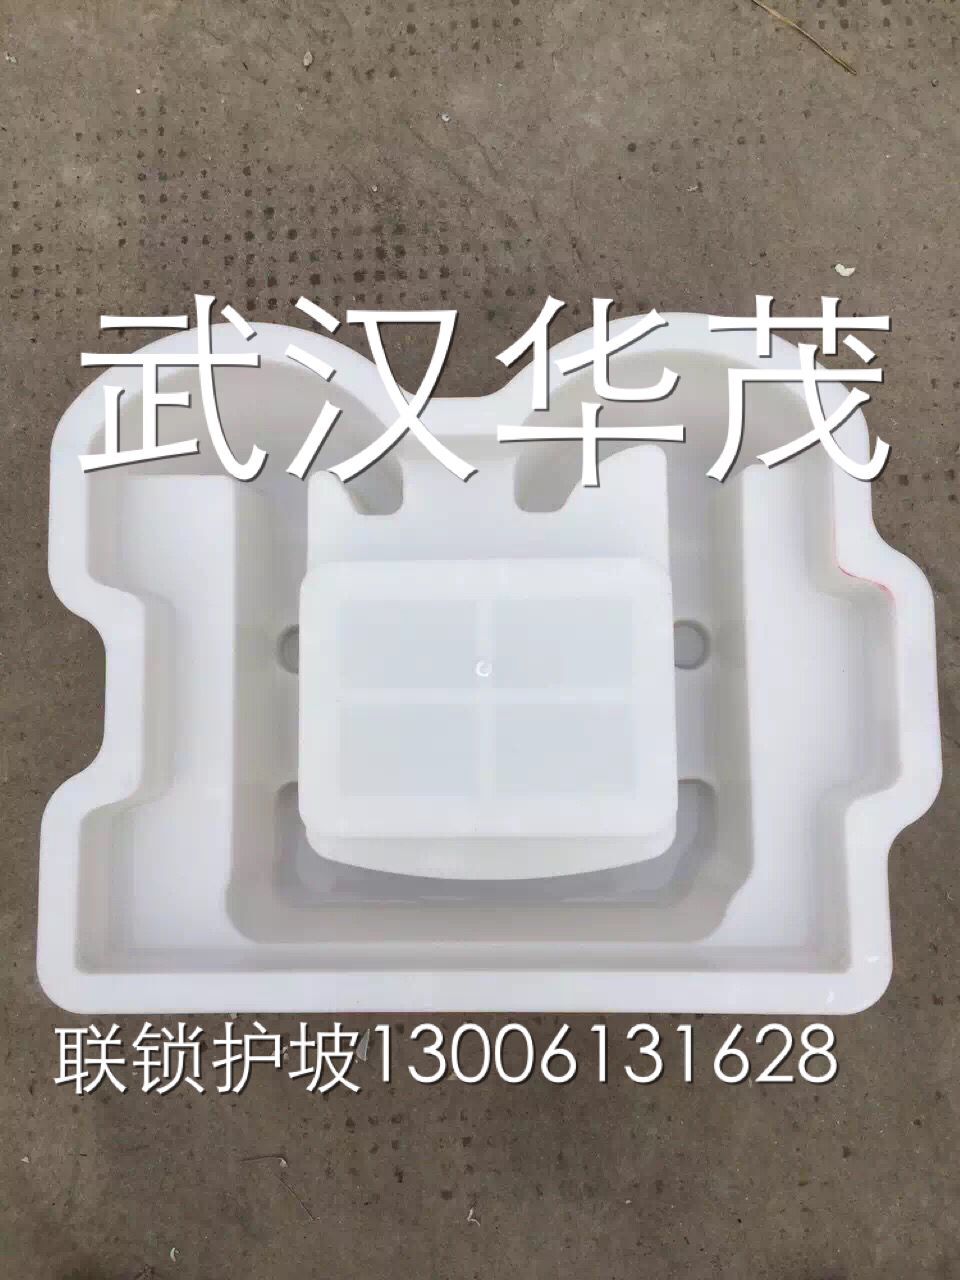 供应武汉市新型连锁护坡塑料模具-水利连锁护坡塑料模具供货商图片